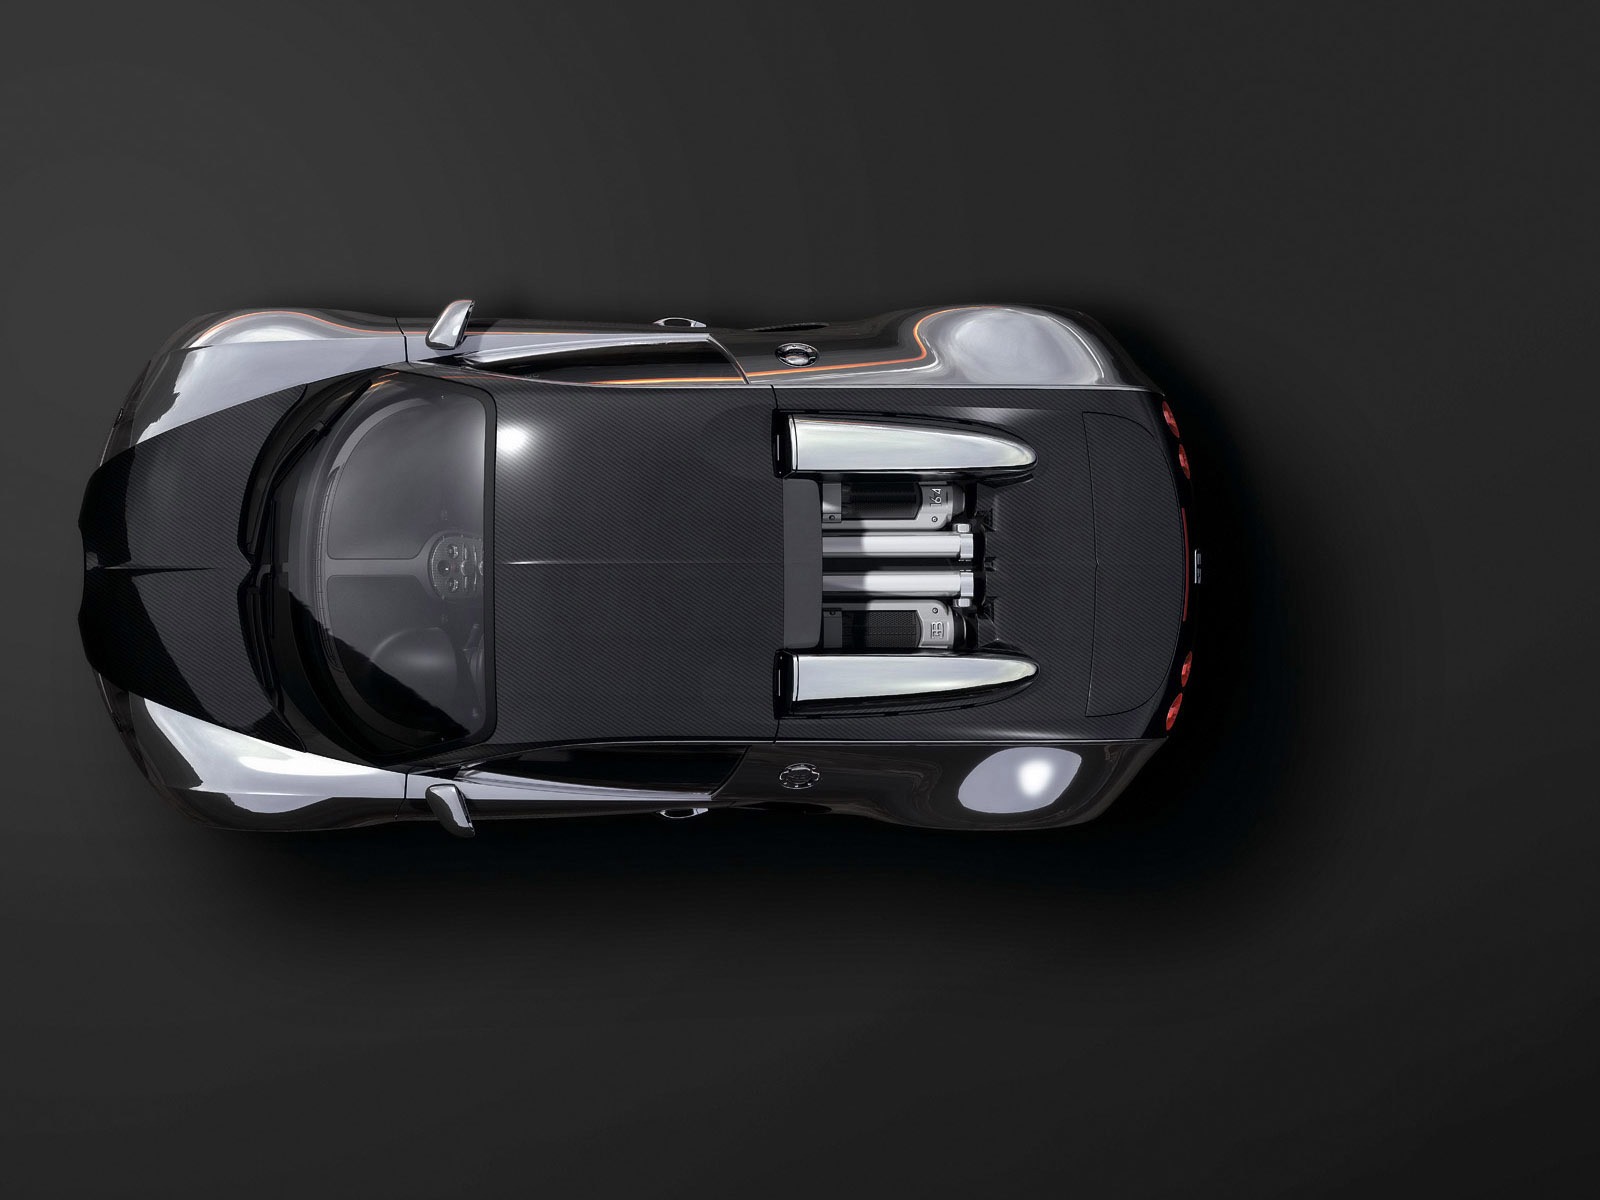 Bugatti Veyron Fondos de disco (3) #20 - 1600x1200